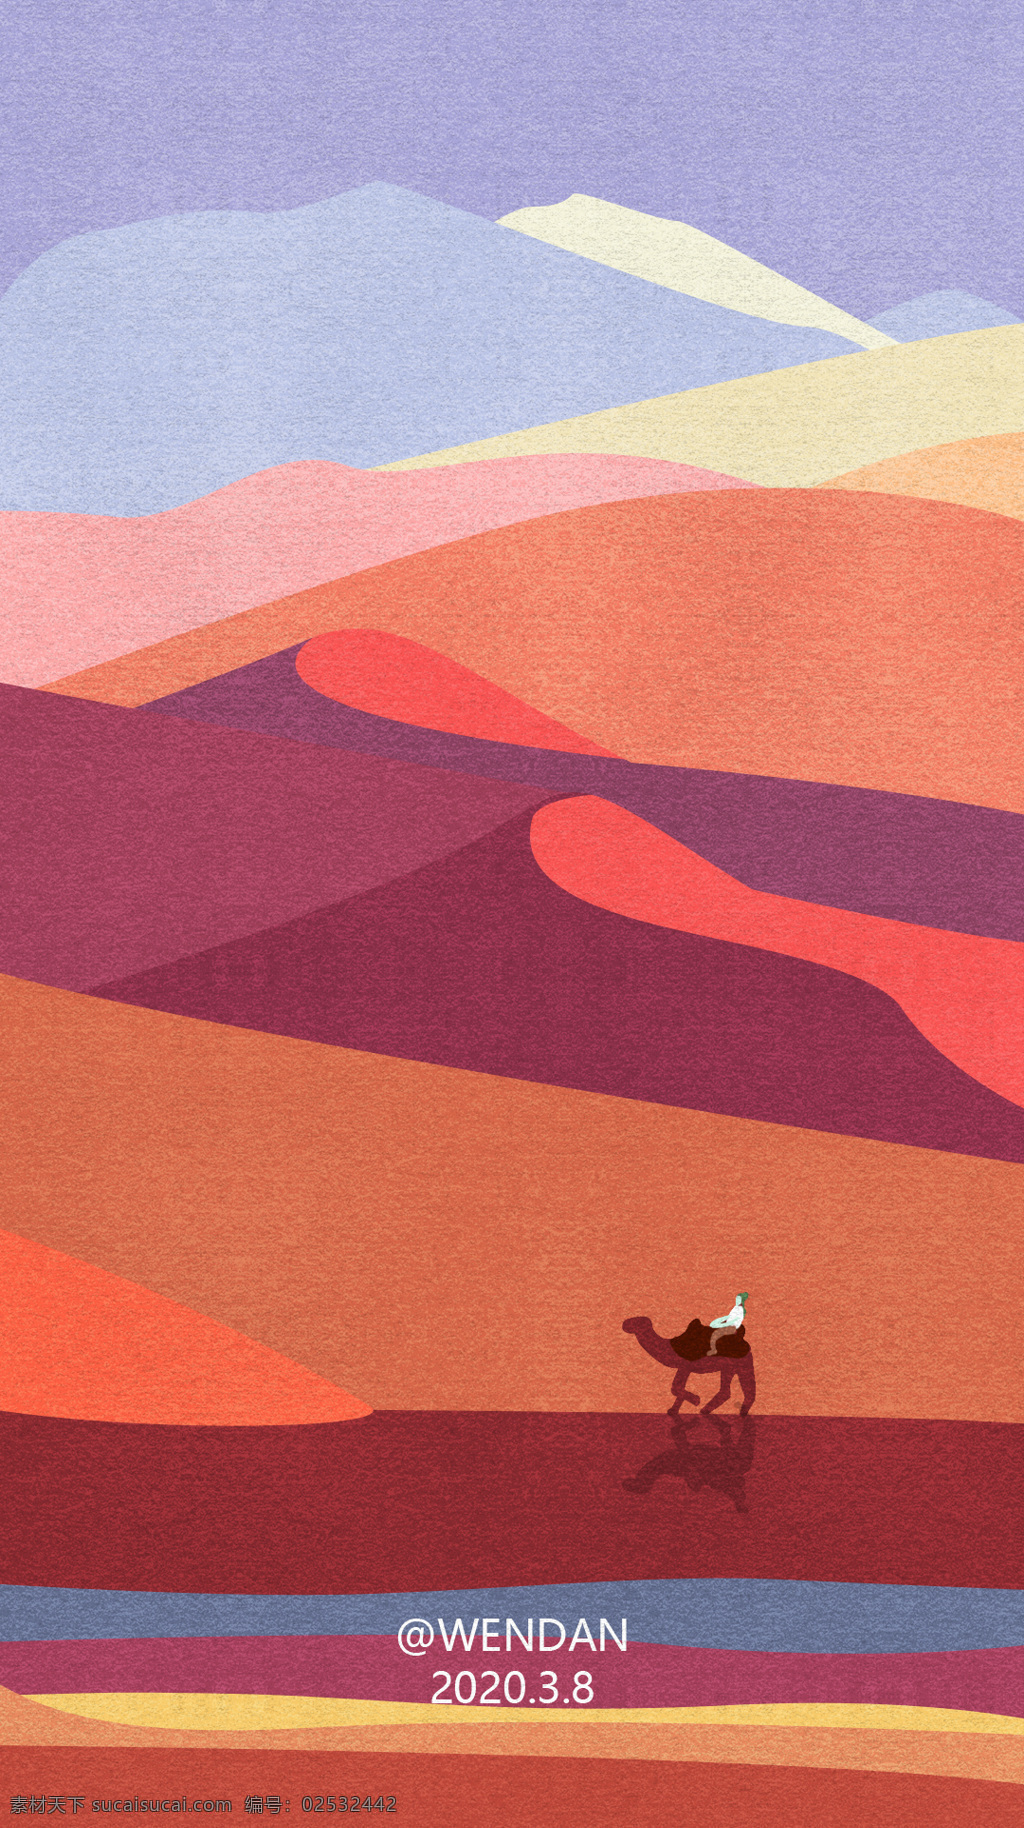 手绘 插画 扁平 风格 沙漠 骆驼 扁平风格 手绘插画